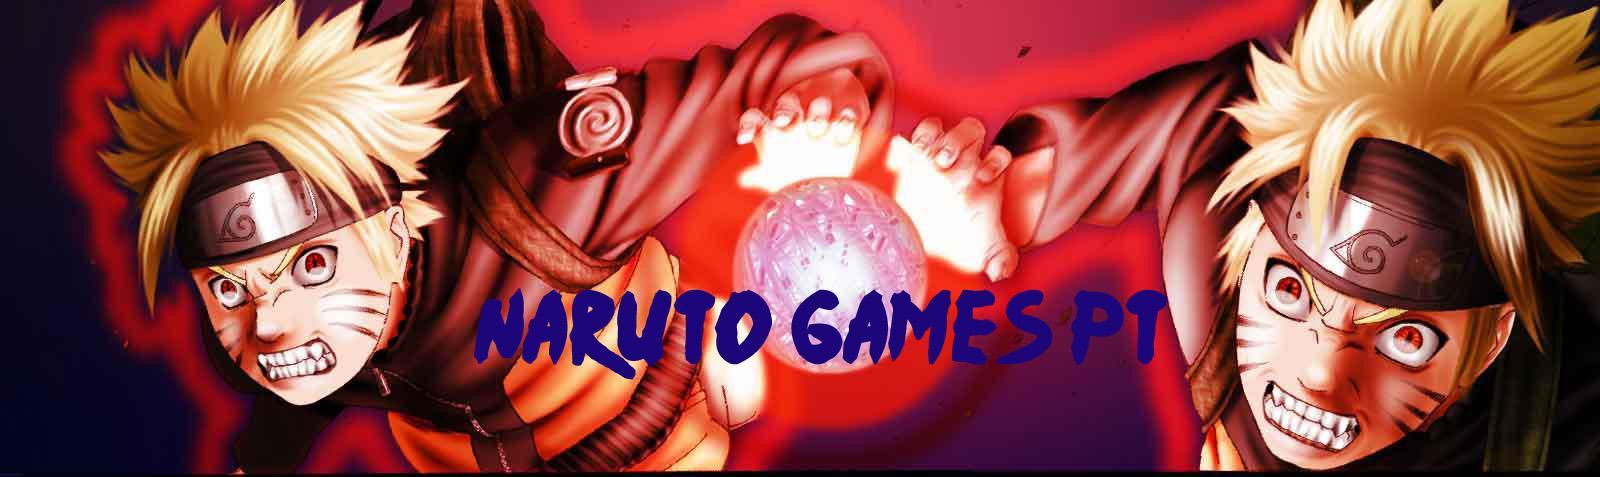 Naruto Games PT - NNJ - Matches nacionais